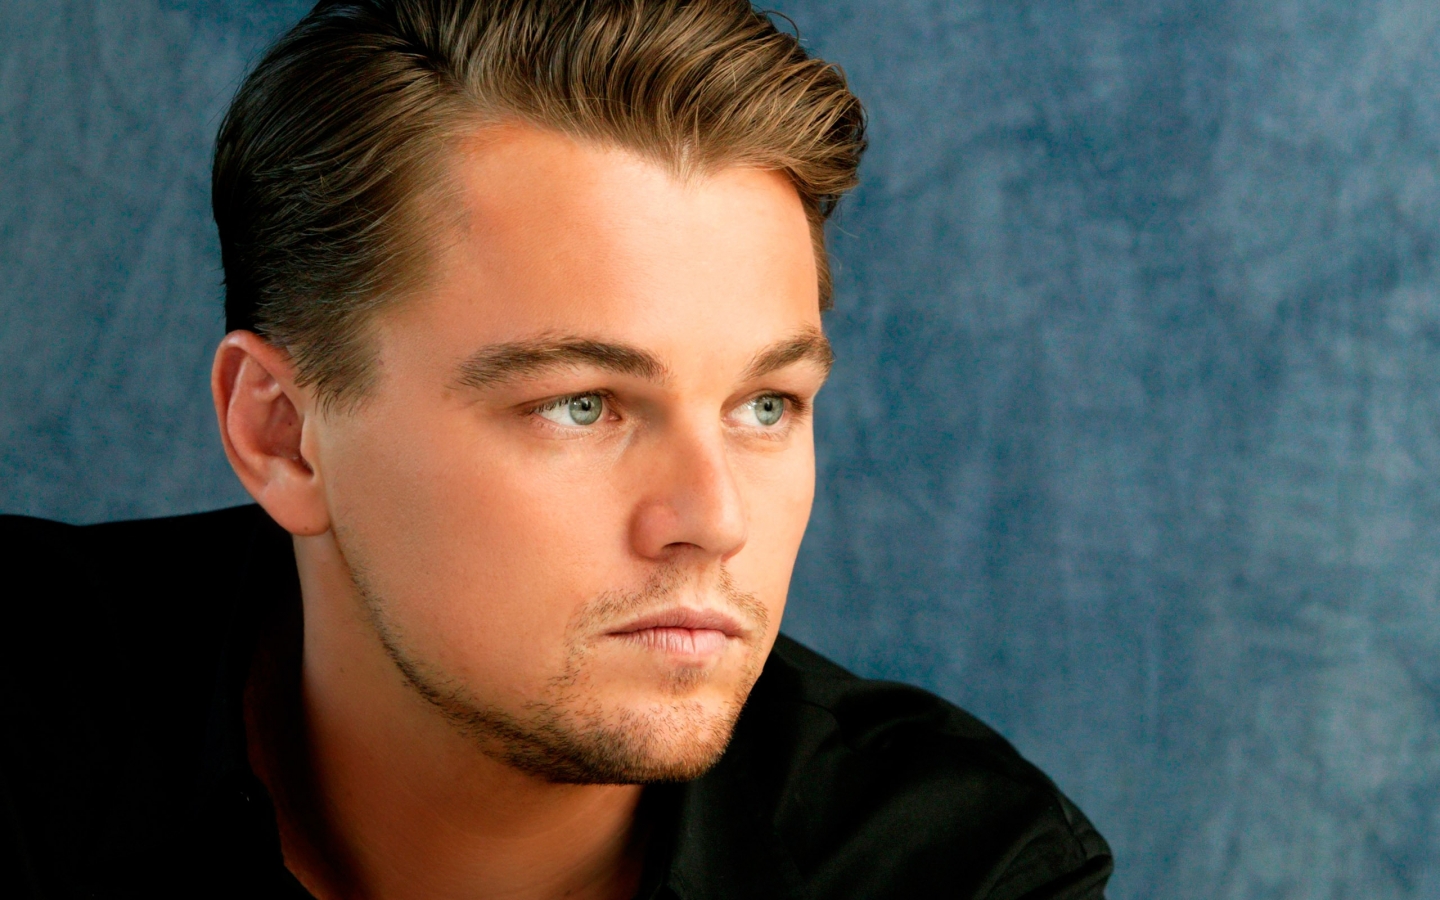 Beautiful Leonardo DiCaprio for 1440 x 900 widescreen resolution